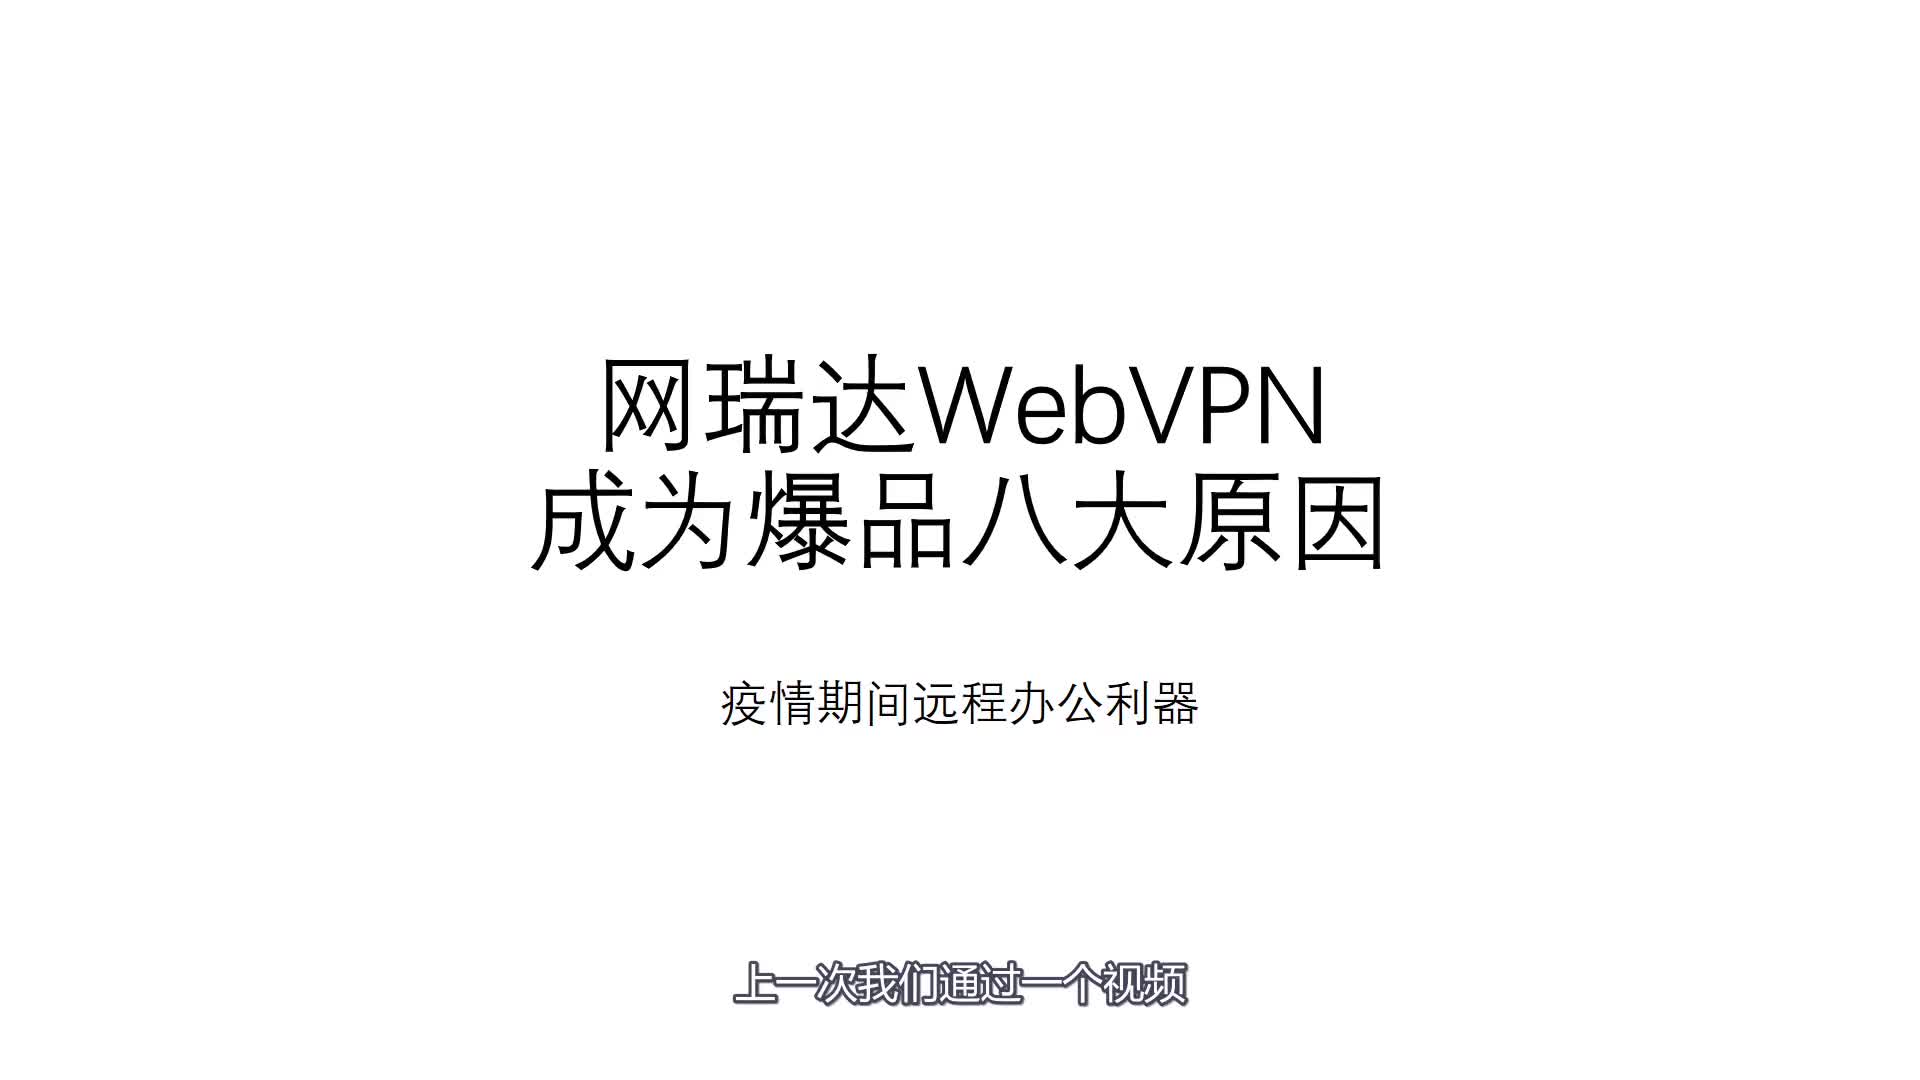 网瑞达WebVPN成为爆品八大原因